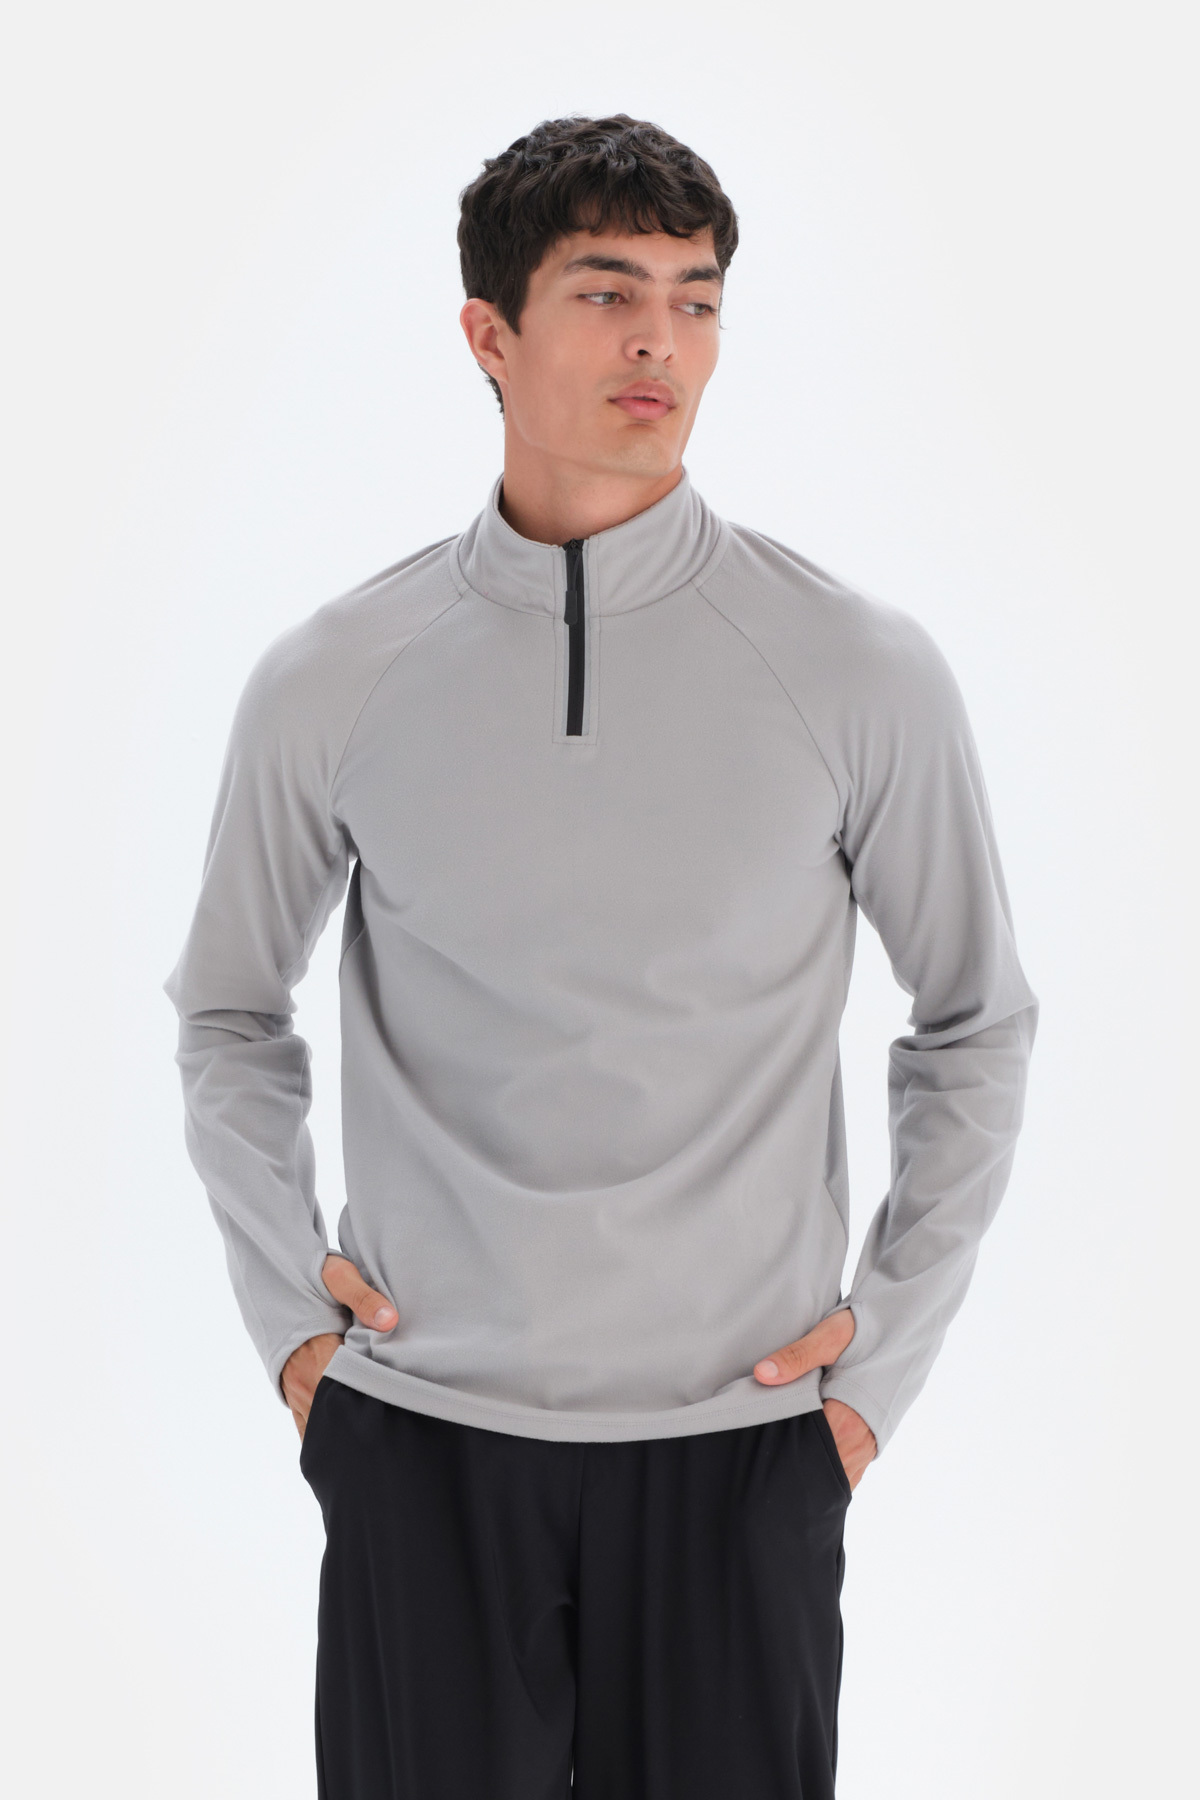 Dagi Men's Light Gray Zipper Collar Sweatshirts